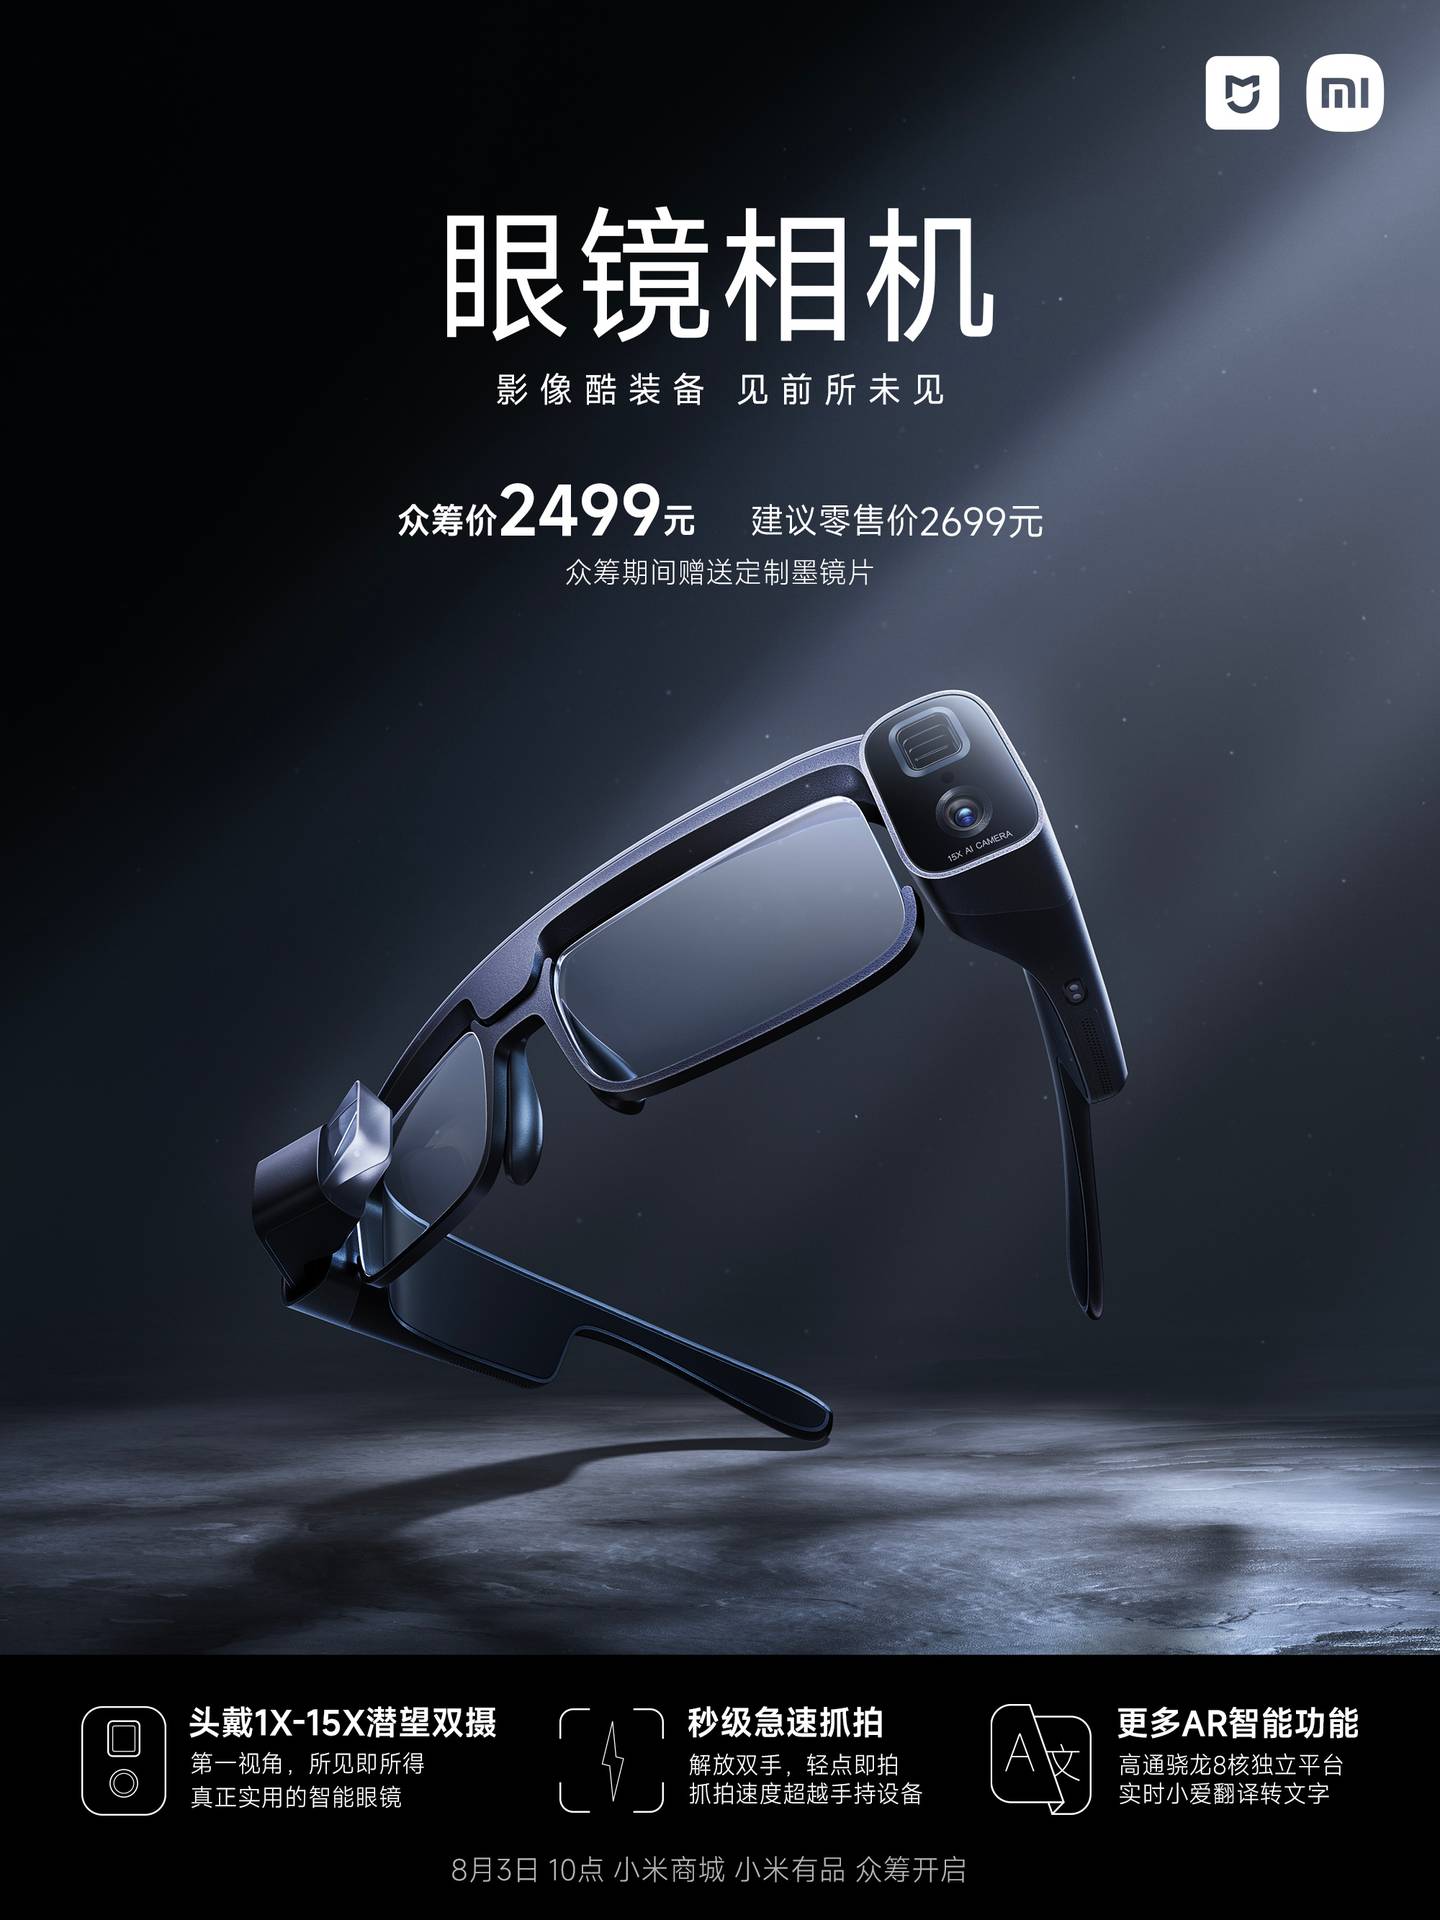 Este es el arte promocional de los Xiaomi Mijia Glasses Camera, que muestran su valor en China de 2499 yuanes.